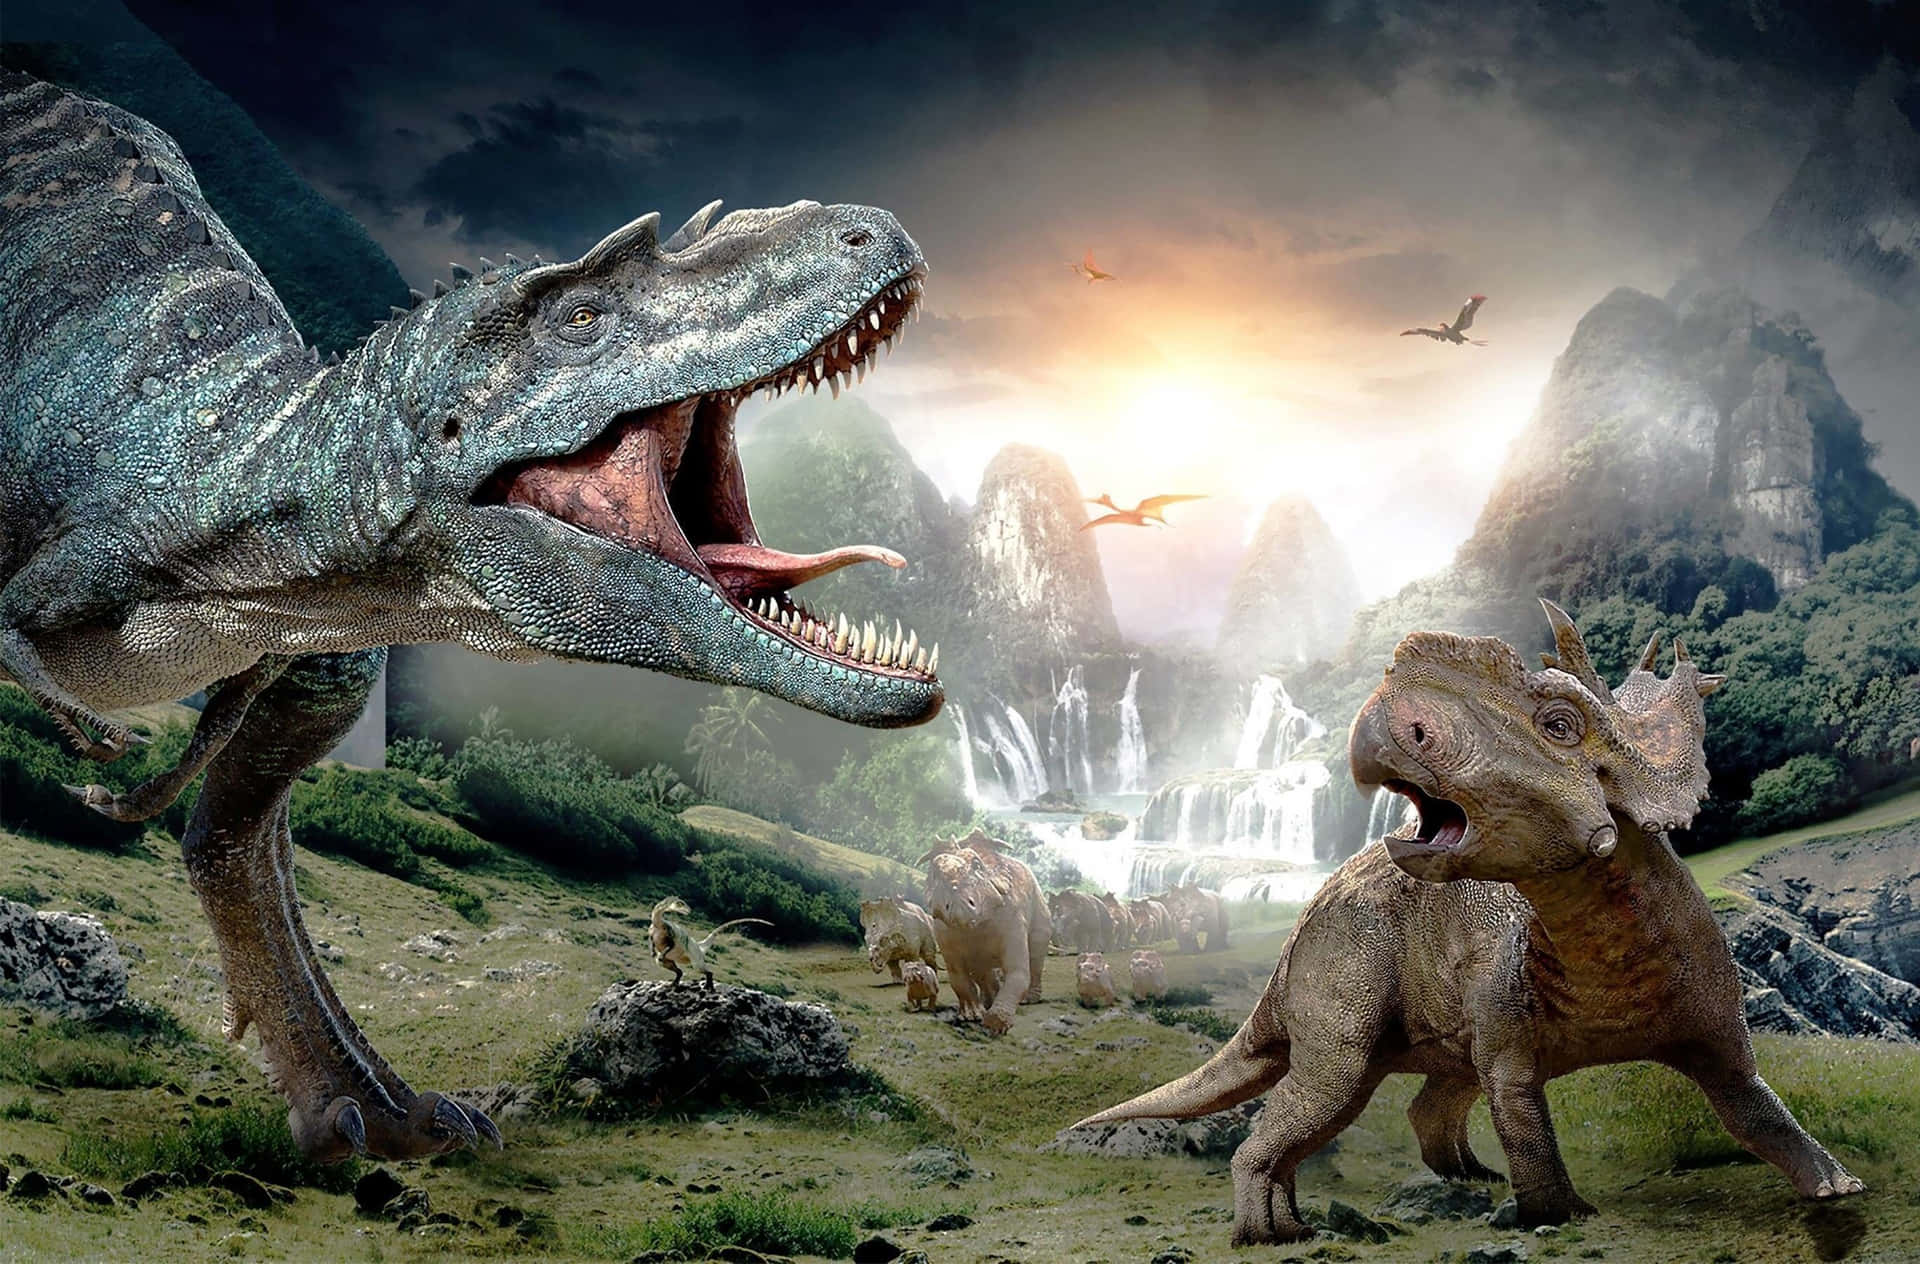 Engigantisk Växtätande Dinosaurie Står I En Vacker, Mystisk Landskap